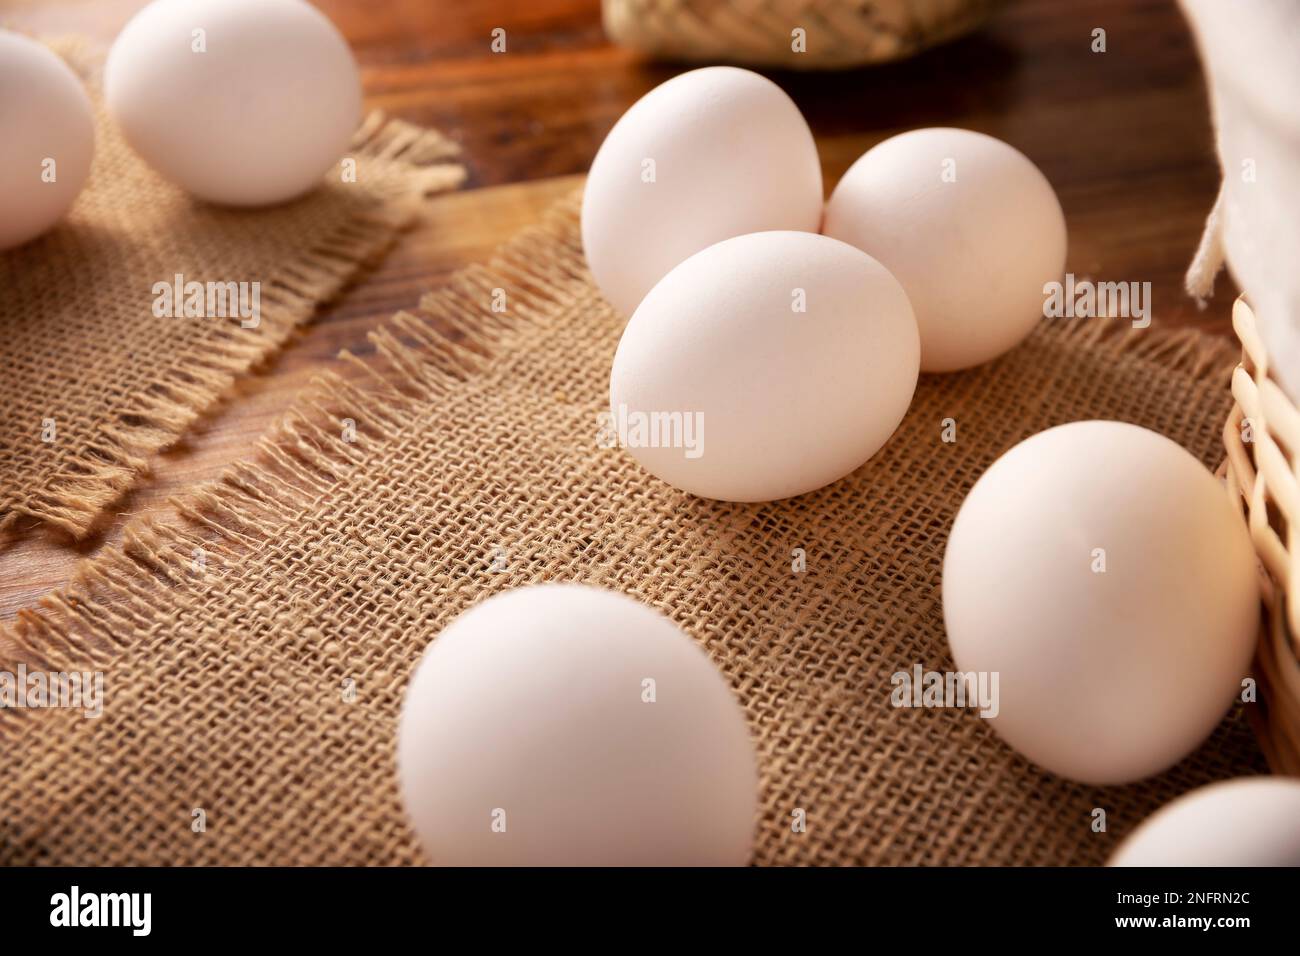 Muchos huevos de pollo blanco en la mesa de madera rústica. Producto alimenticio nutritivo y económico muy popular. Imagen de primer plano. Foto de stock